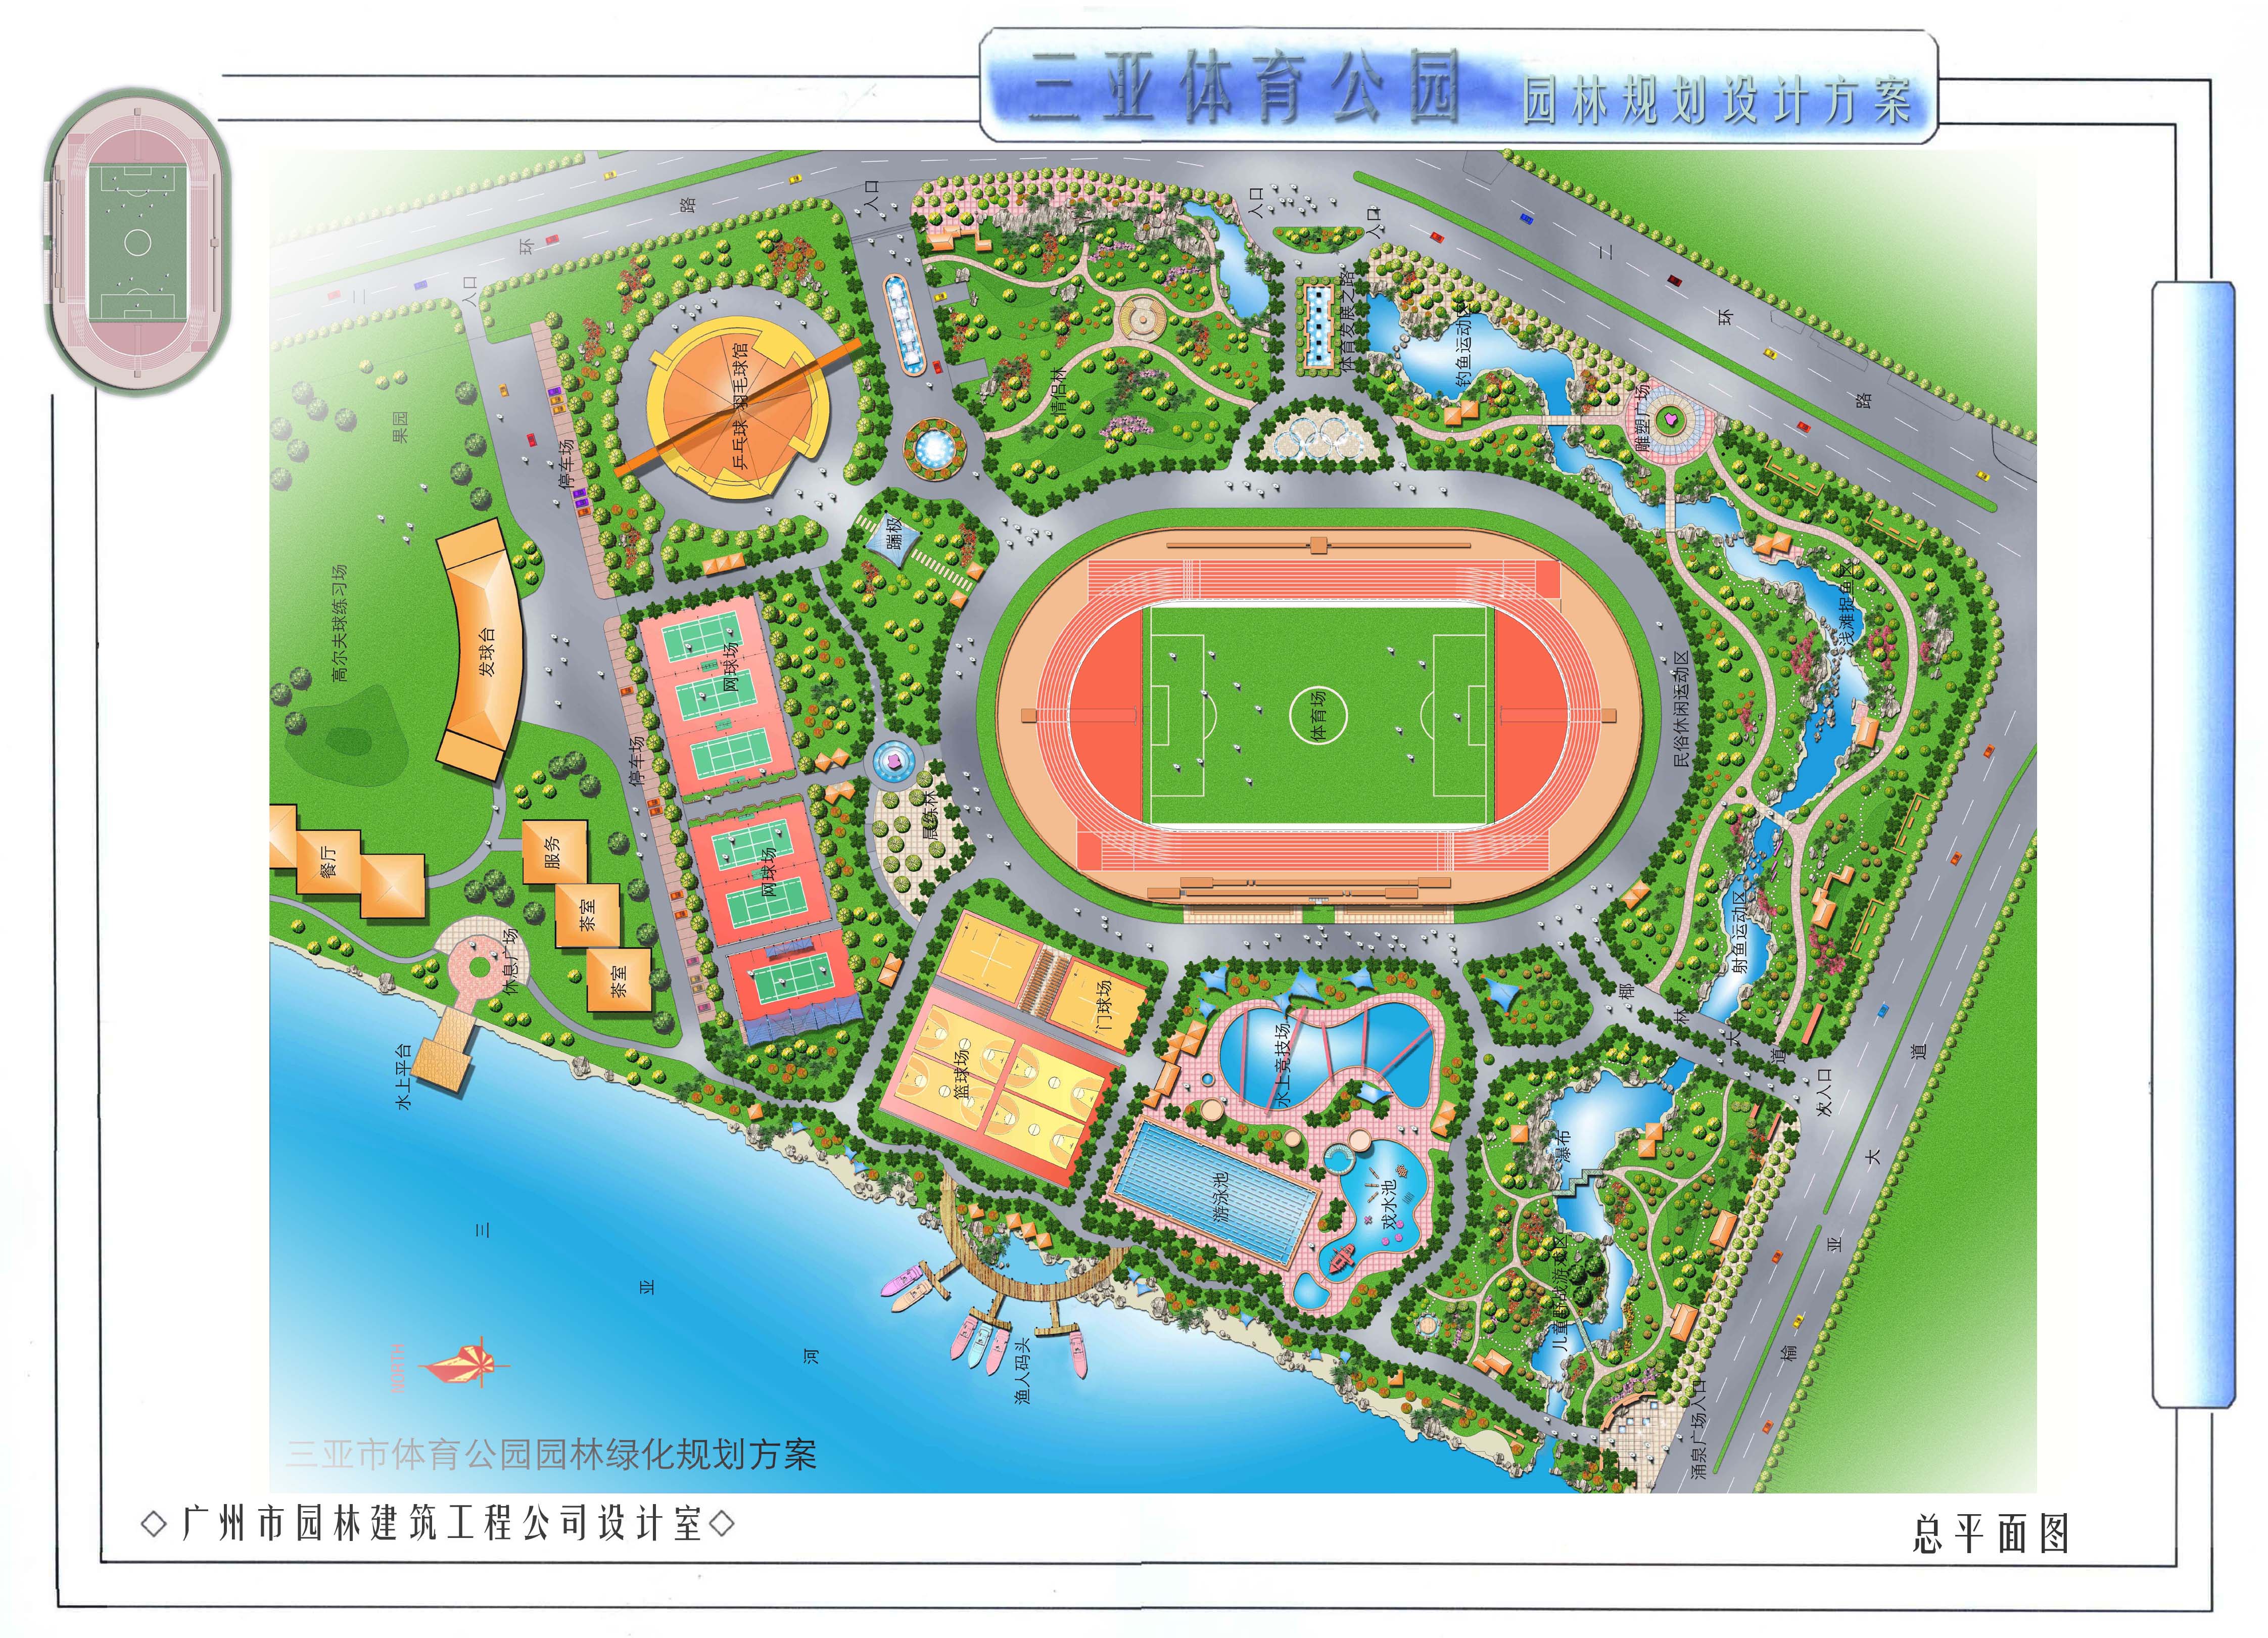 海南三亚体育公园园林规划方案jpg